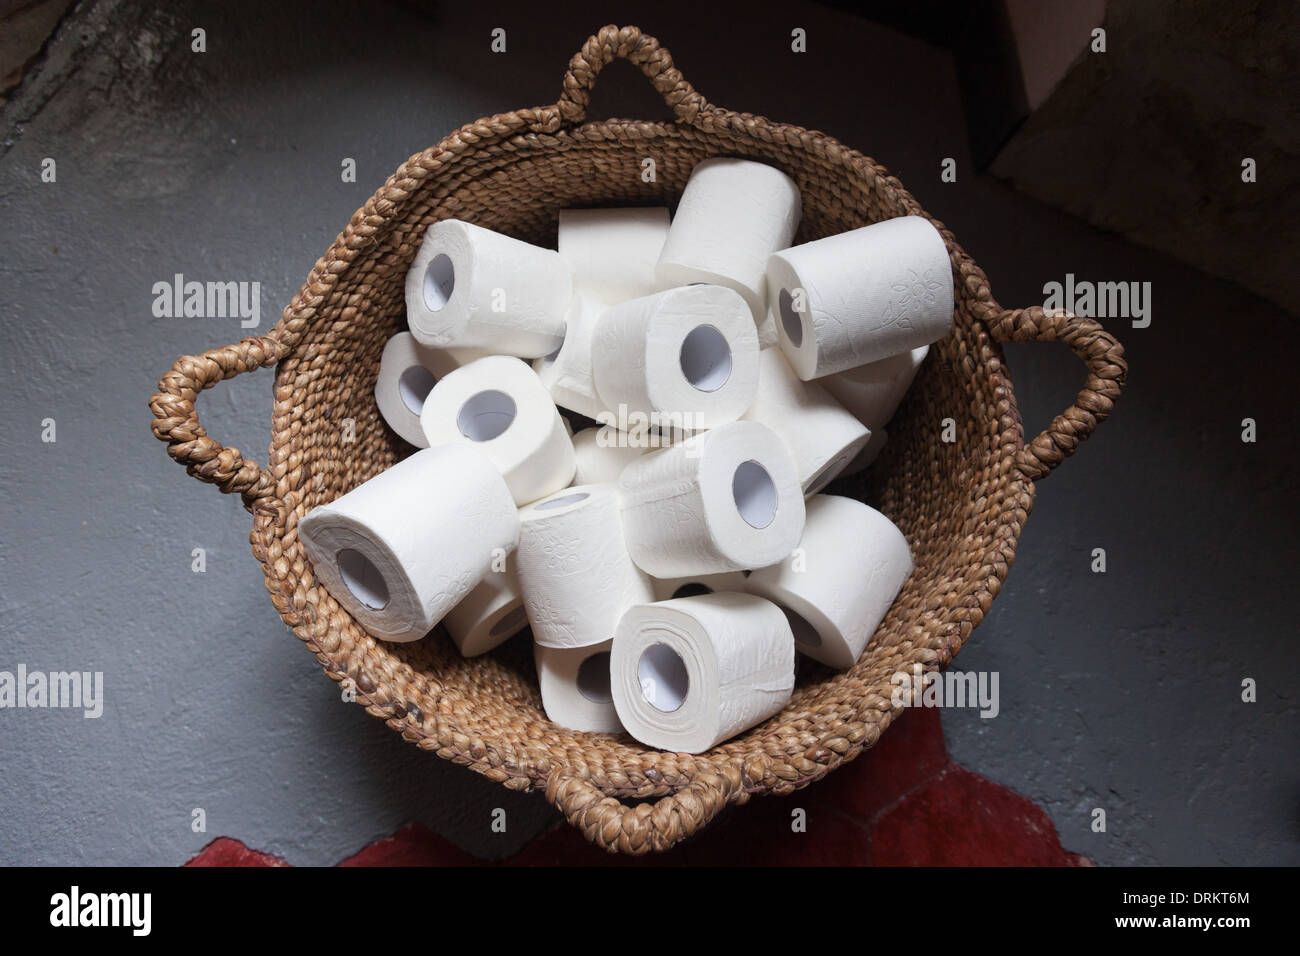 Des rouleaux de papier de toilette dans un panier. Banque D'Images